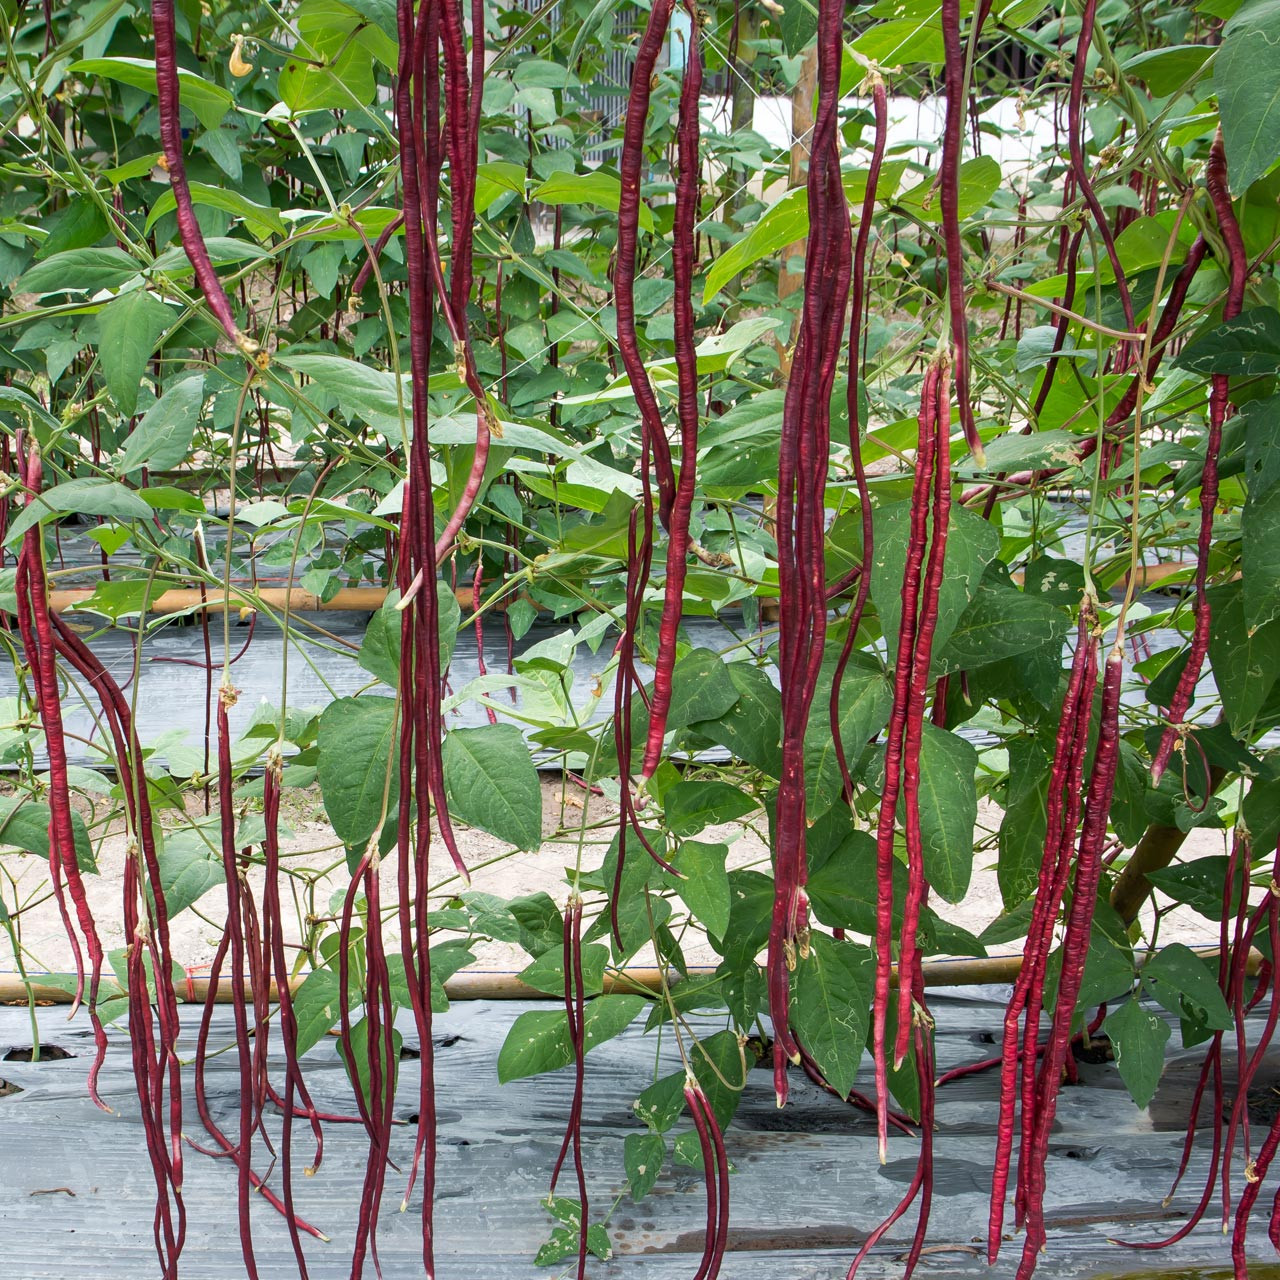 Organic Red Podded Asparagus Bean (Vigna unguiculata)